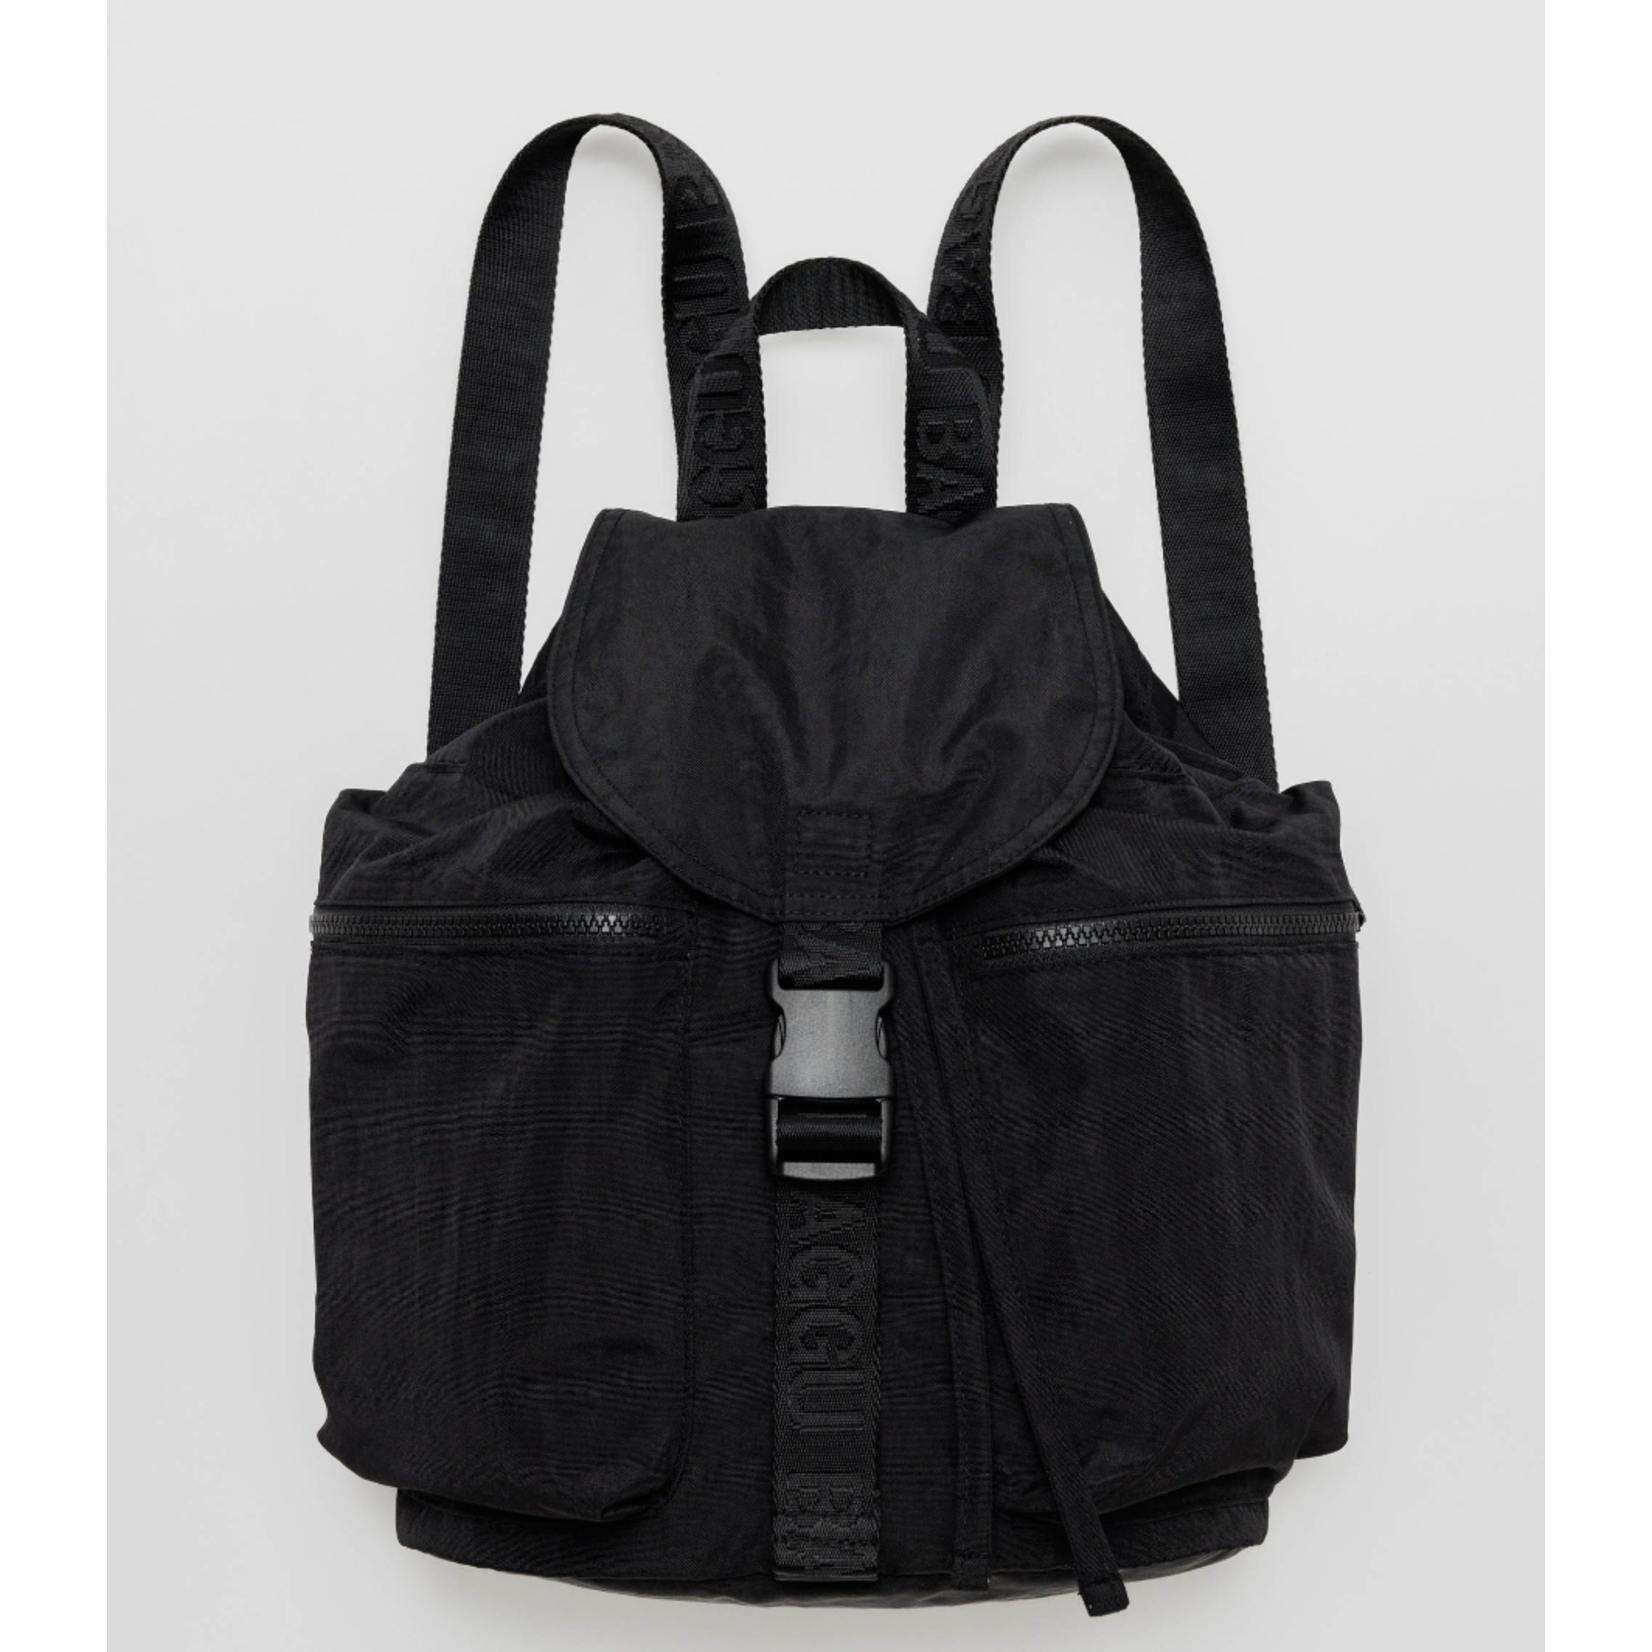 Baggu Sport Backpack - Black